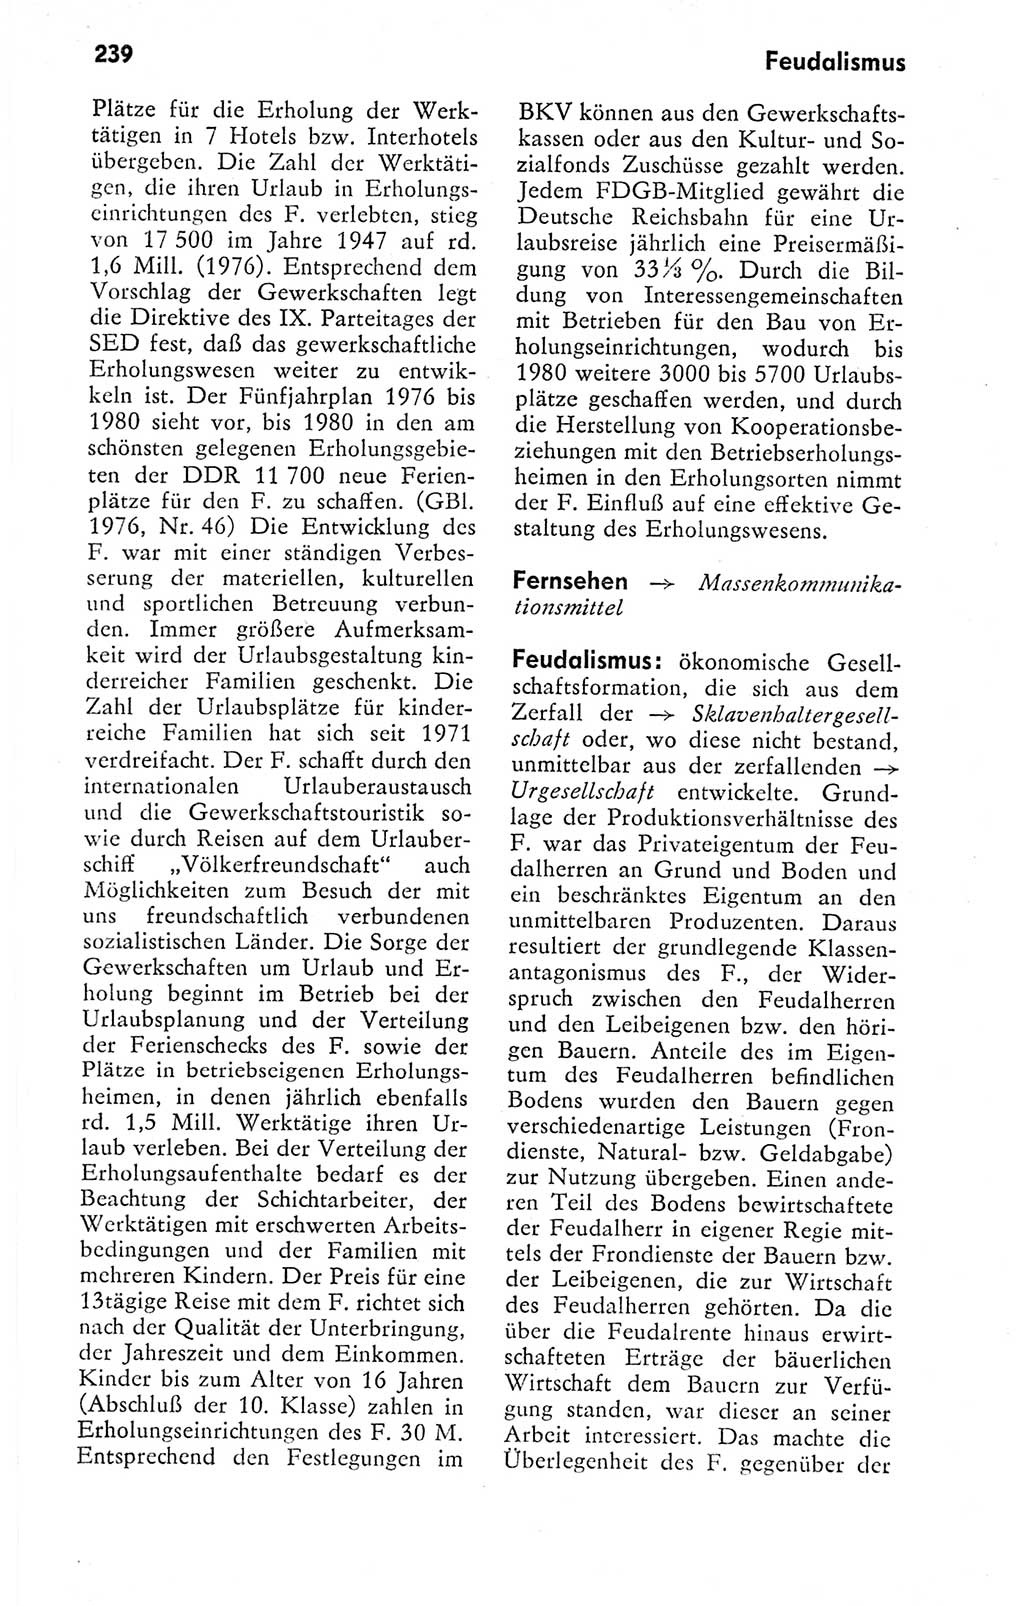 Kleines politisches Wörterbuch [Deutsche Demokratische Republik (DDR)] 1978, Seite 239 (Kl. pol. Wb. DDR 1978, S. 239)